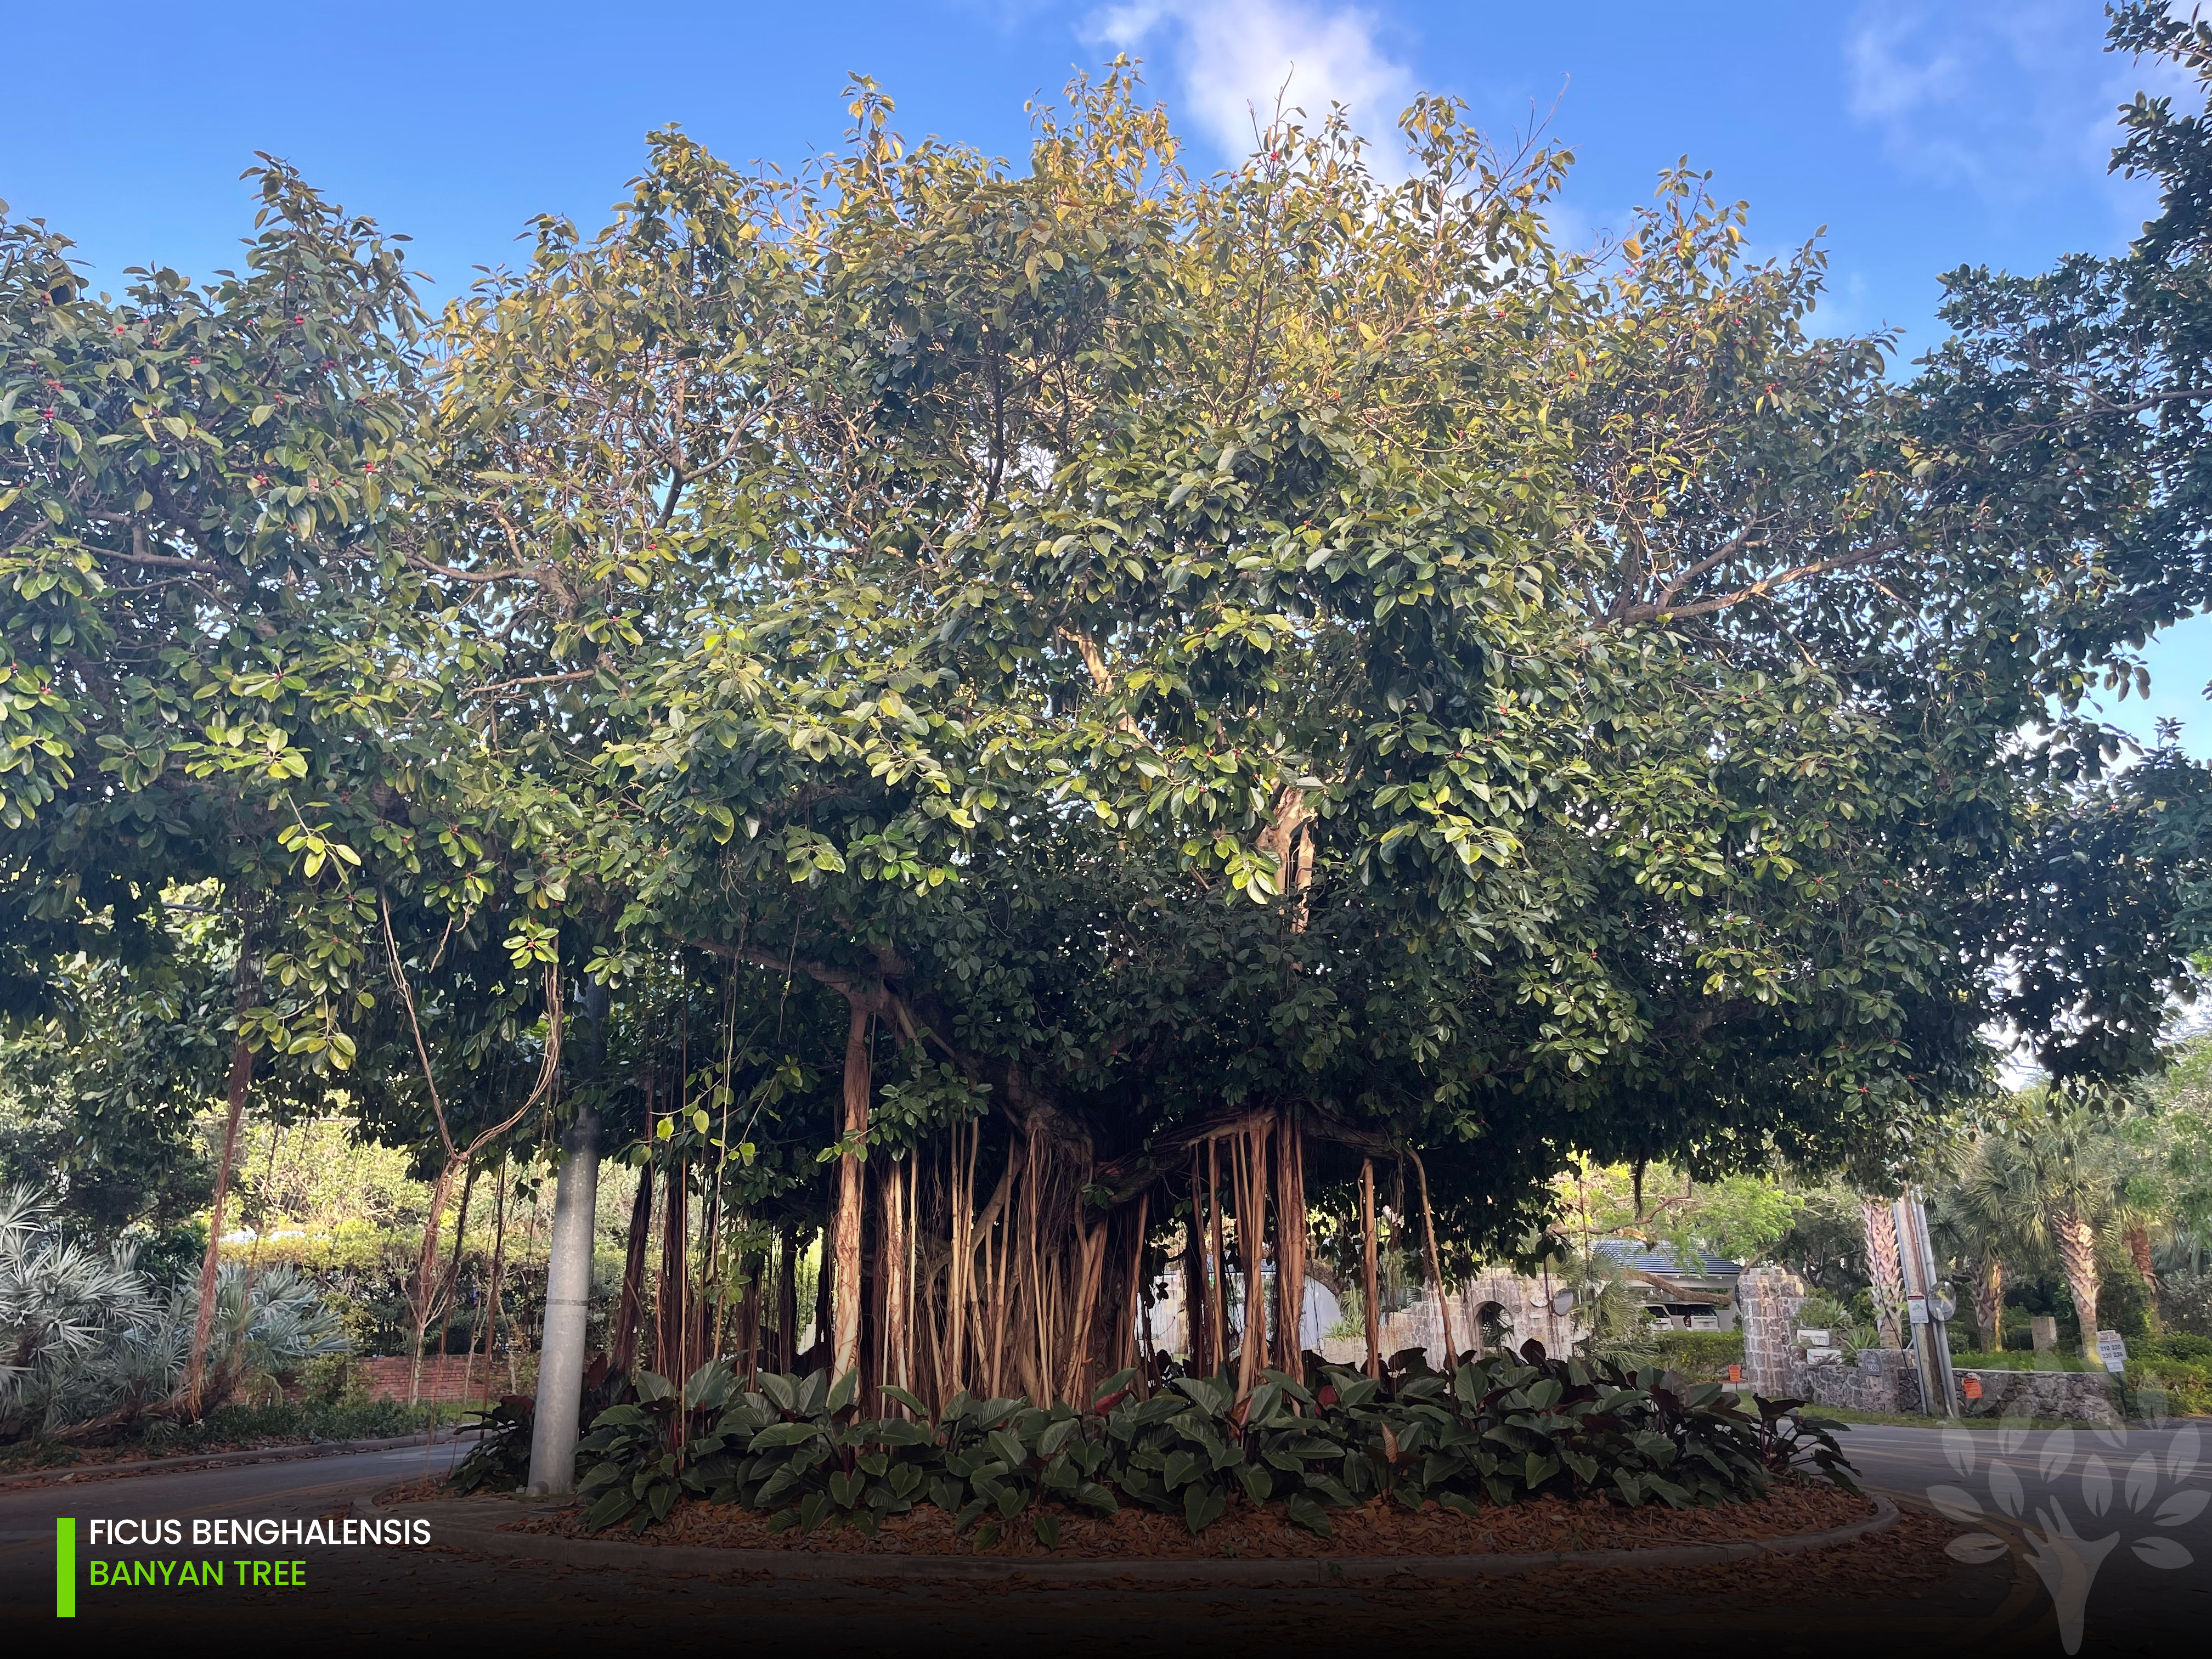 ficus benghalensis - banyan tree